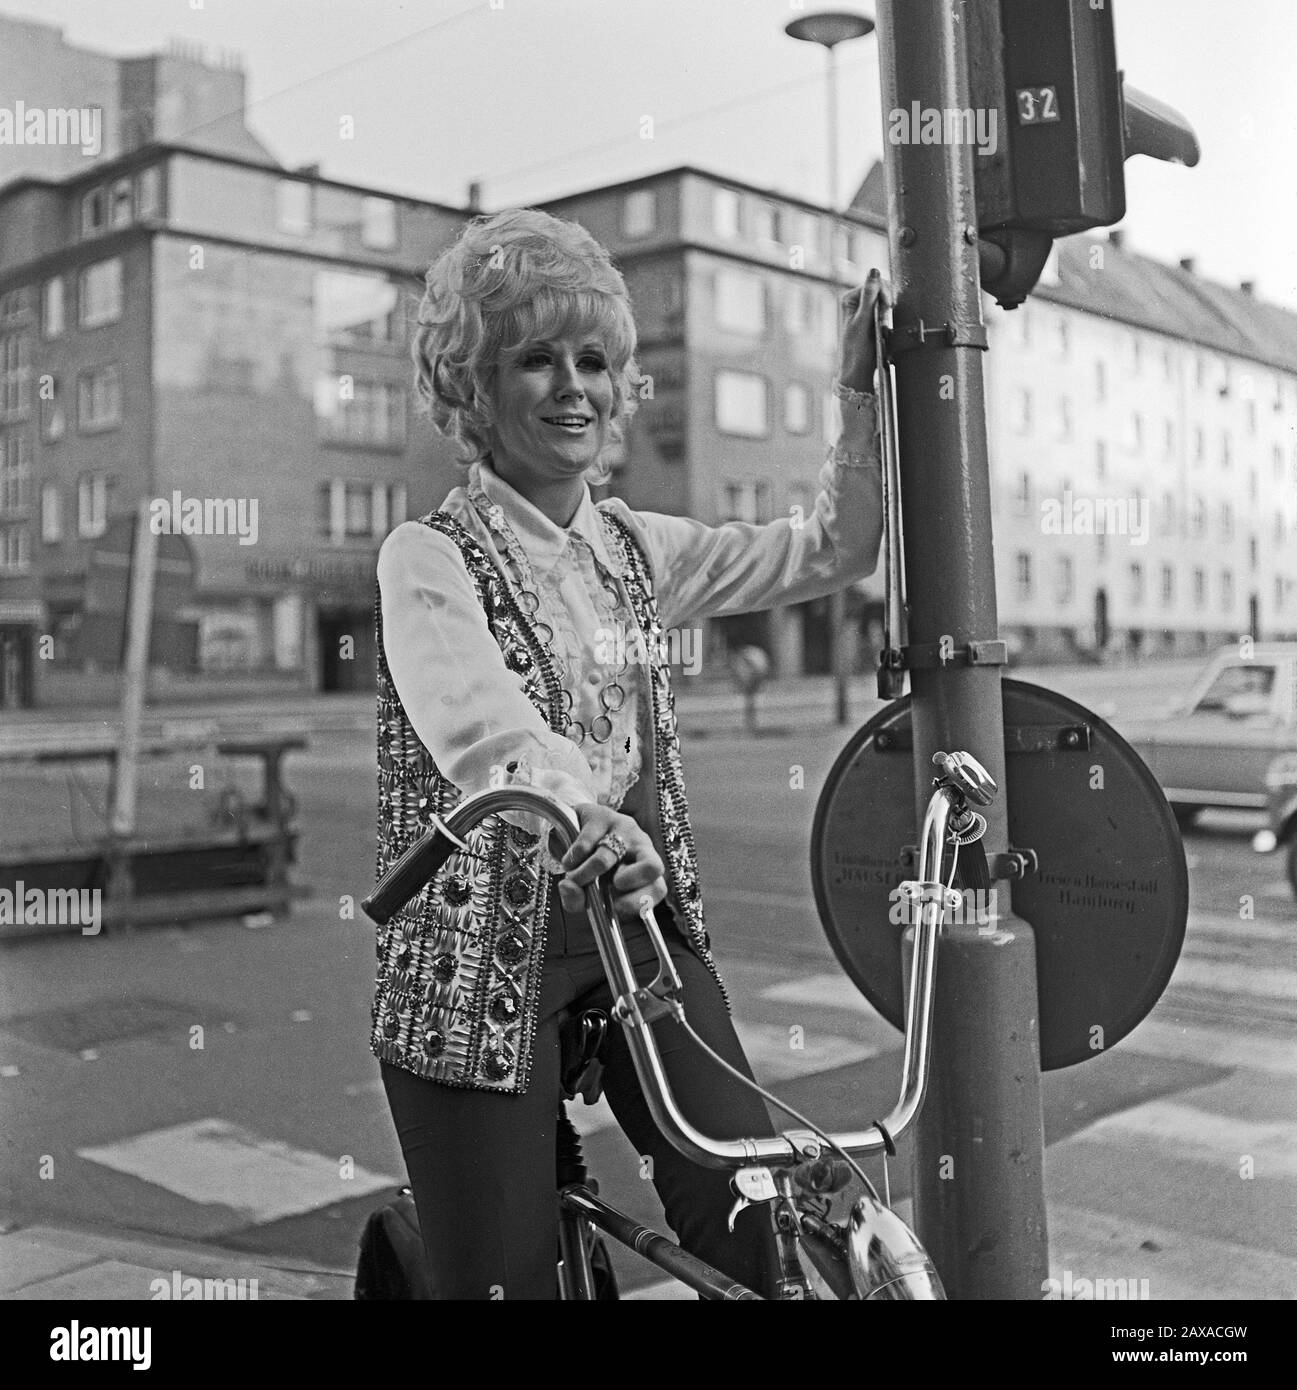 Dusty Springfield, britische Pop- und Soulsängerin, bei einem Besuch ad Amburgo auf dem Fahrrad, Deutschland 1970. Il cantante pop e soul britannico Dusty Springfield guida una bicicletta mentre visita Amburgo, Germania 1970. Foto Stock